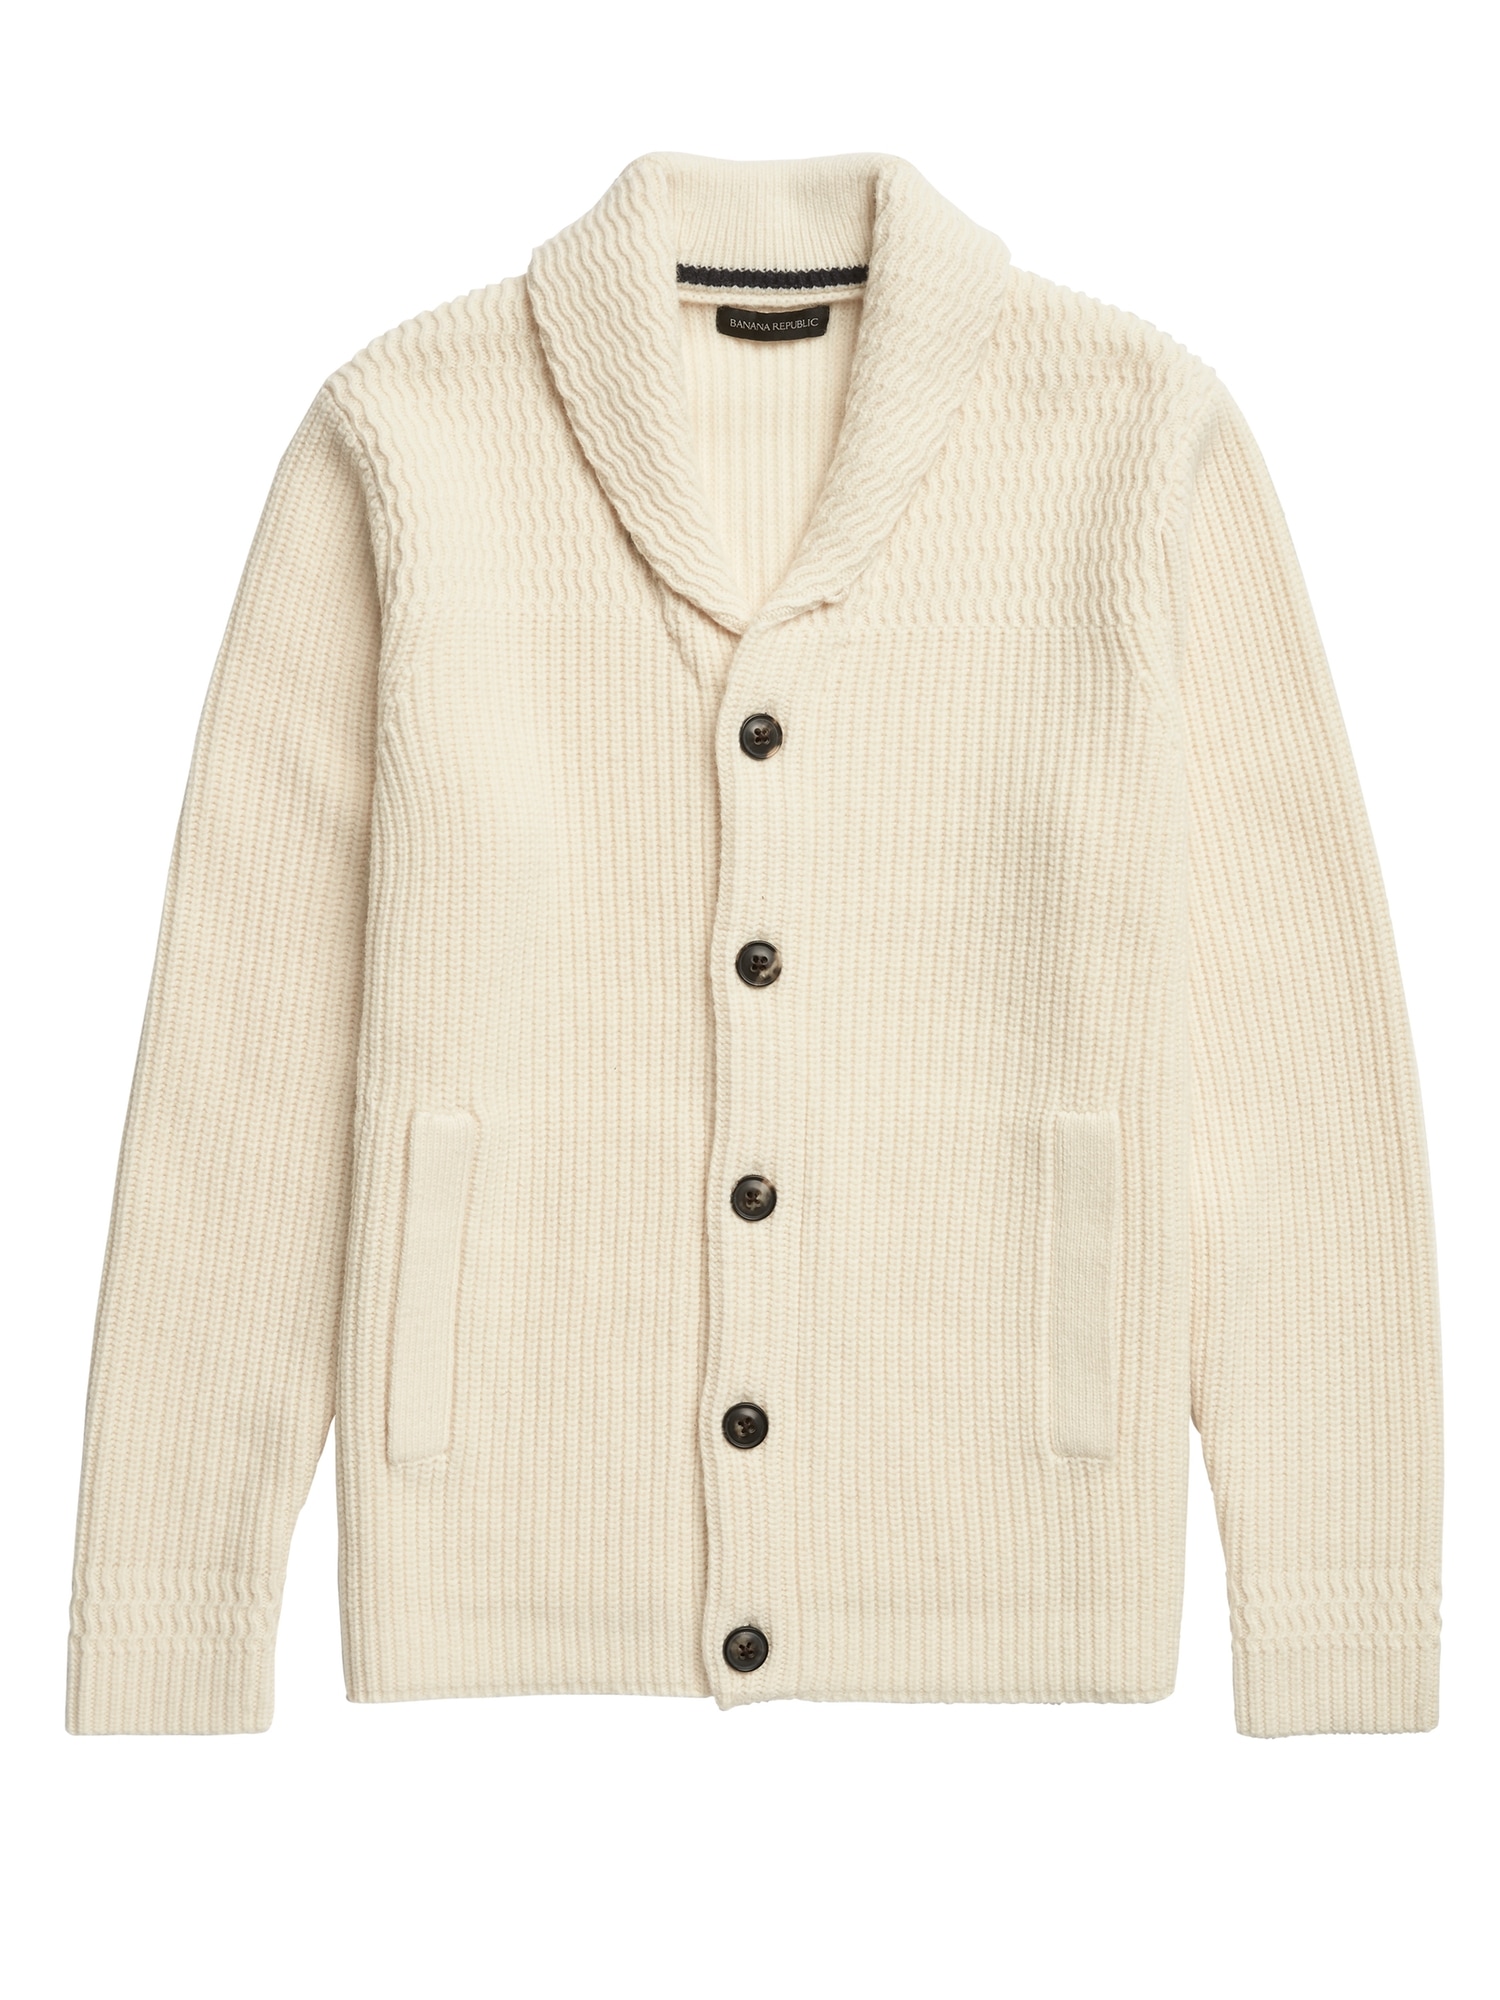 Heritage Shawl-Collar Cardigan Sweater